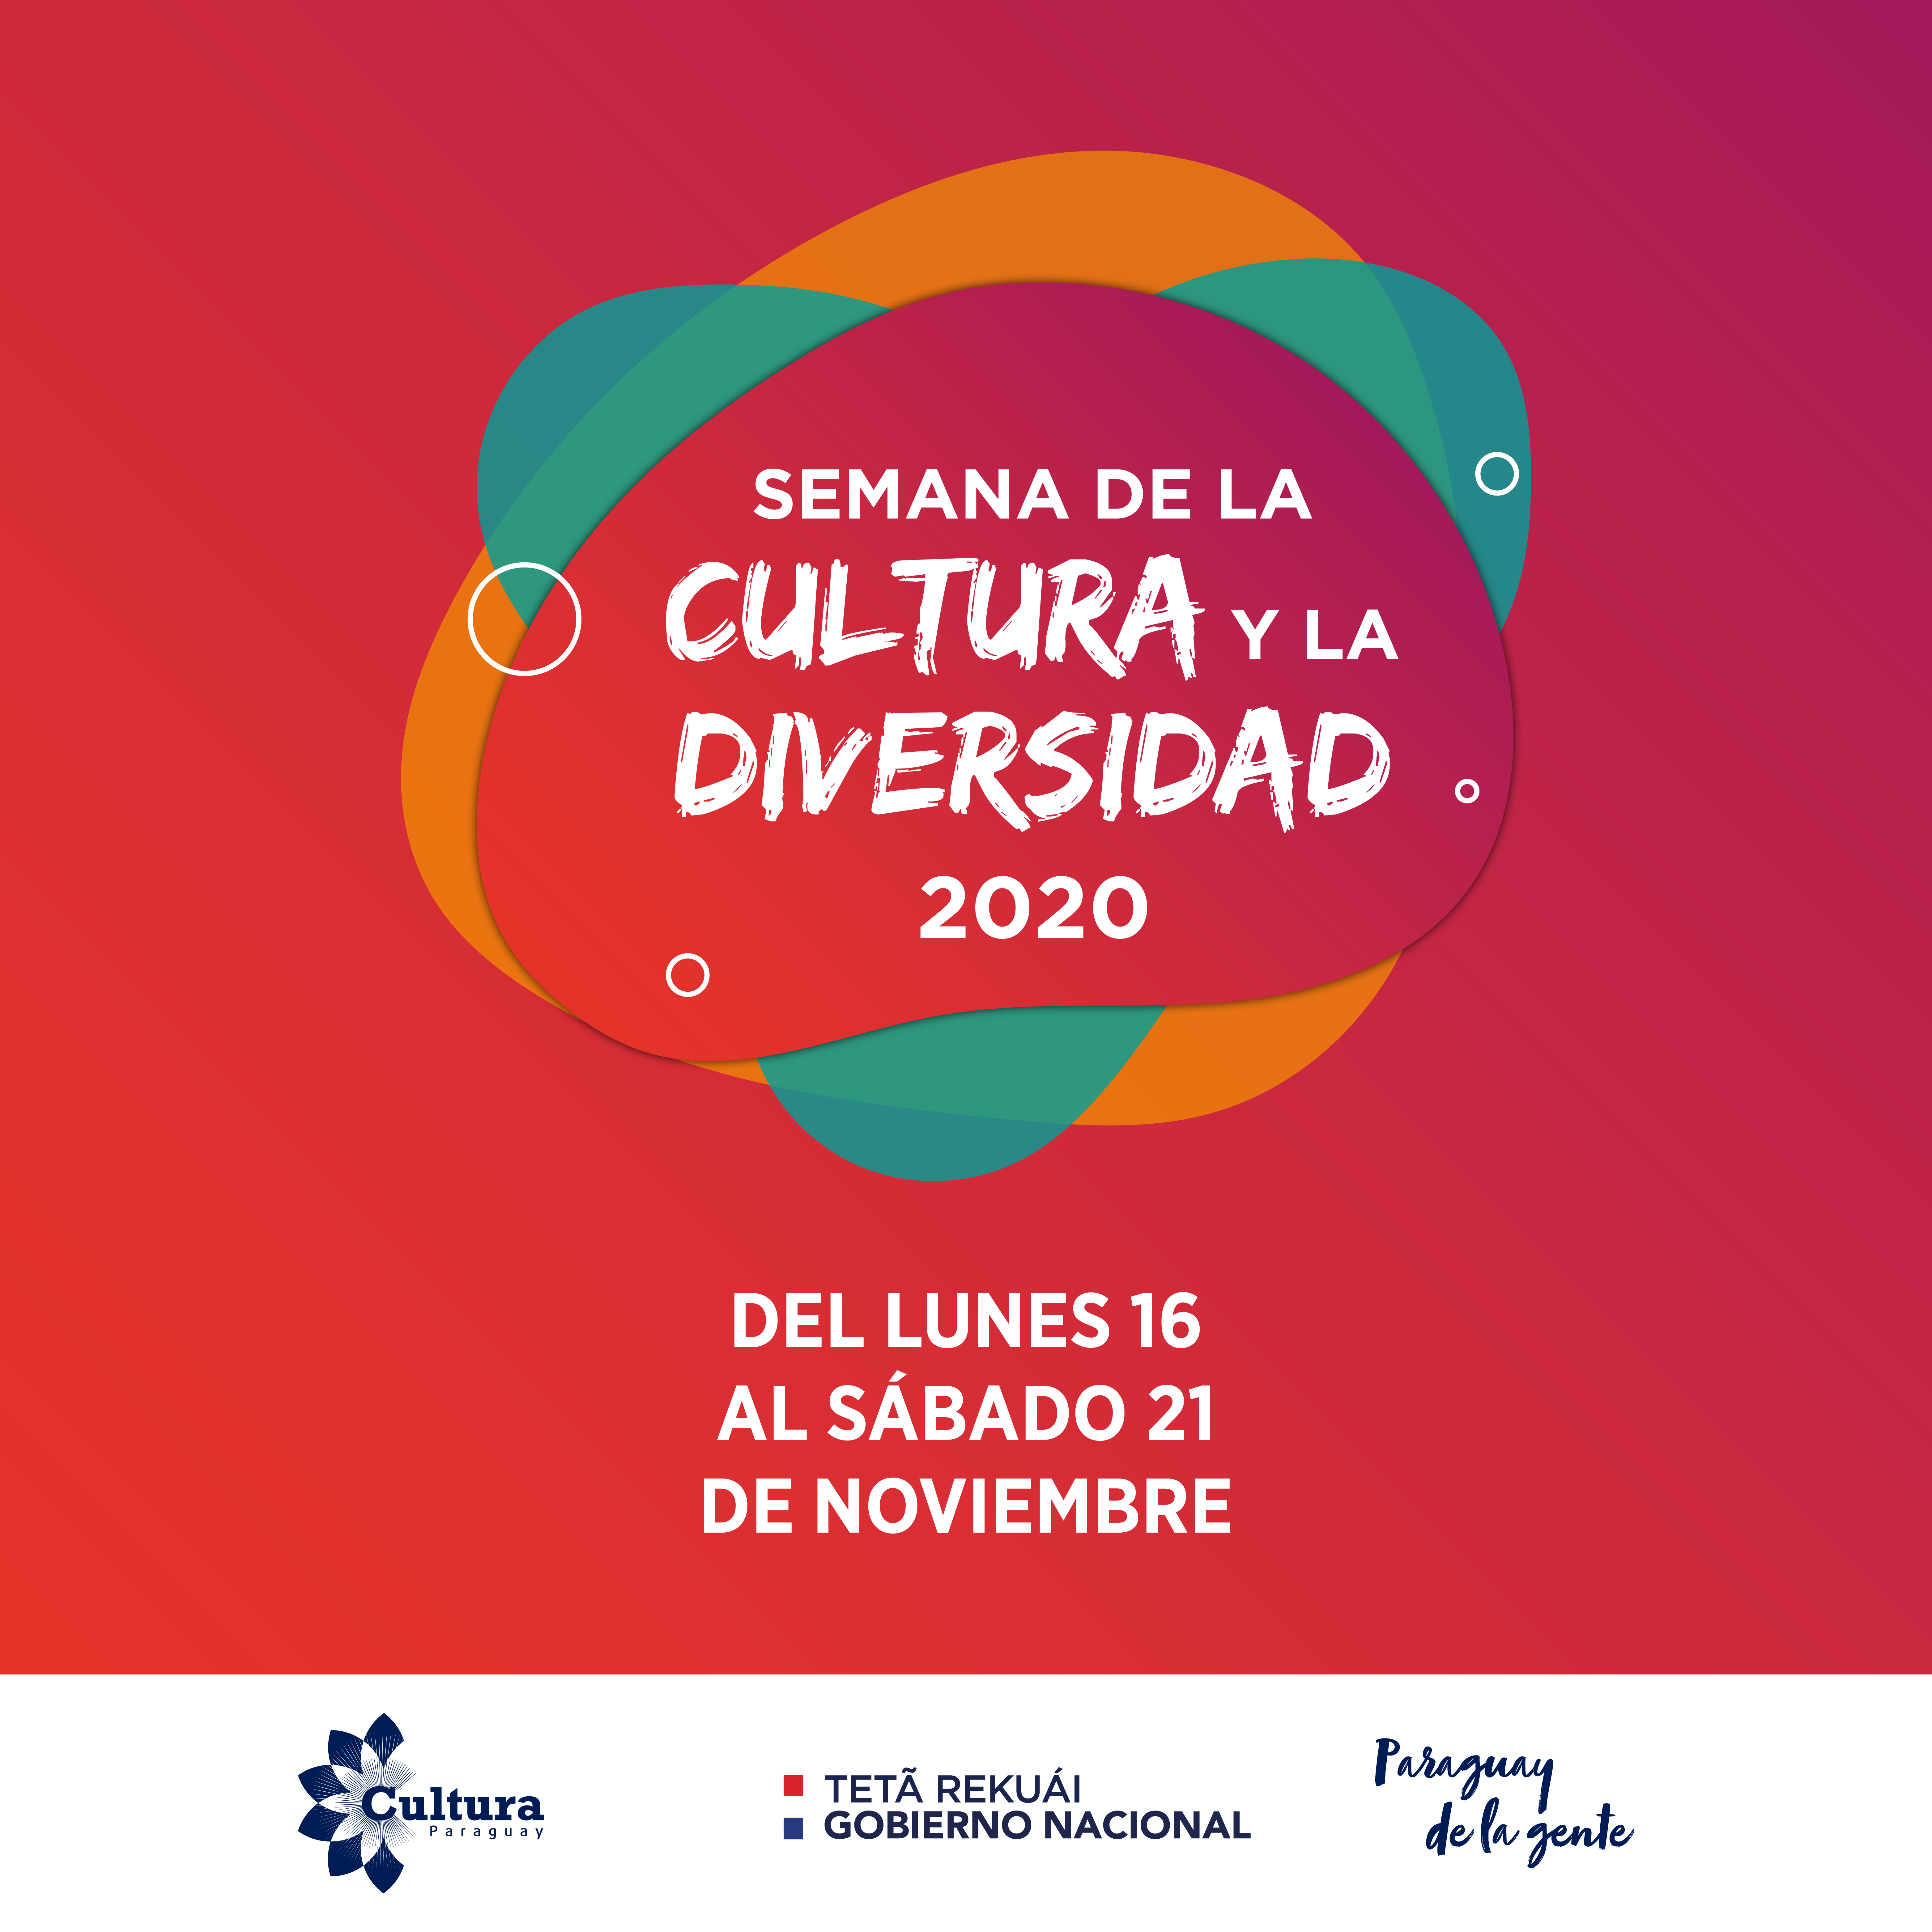 Semana de la Cultura y la Diversidad 2020 inicia este lunes con actividades artísticas y culturales imagen